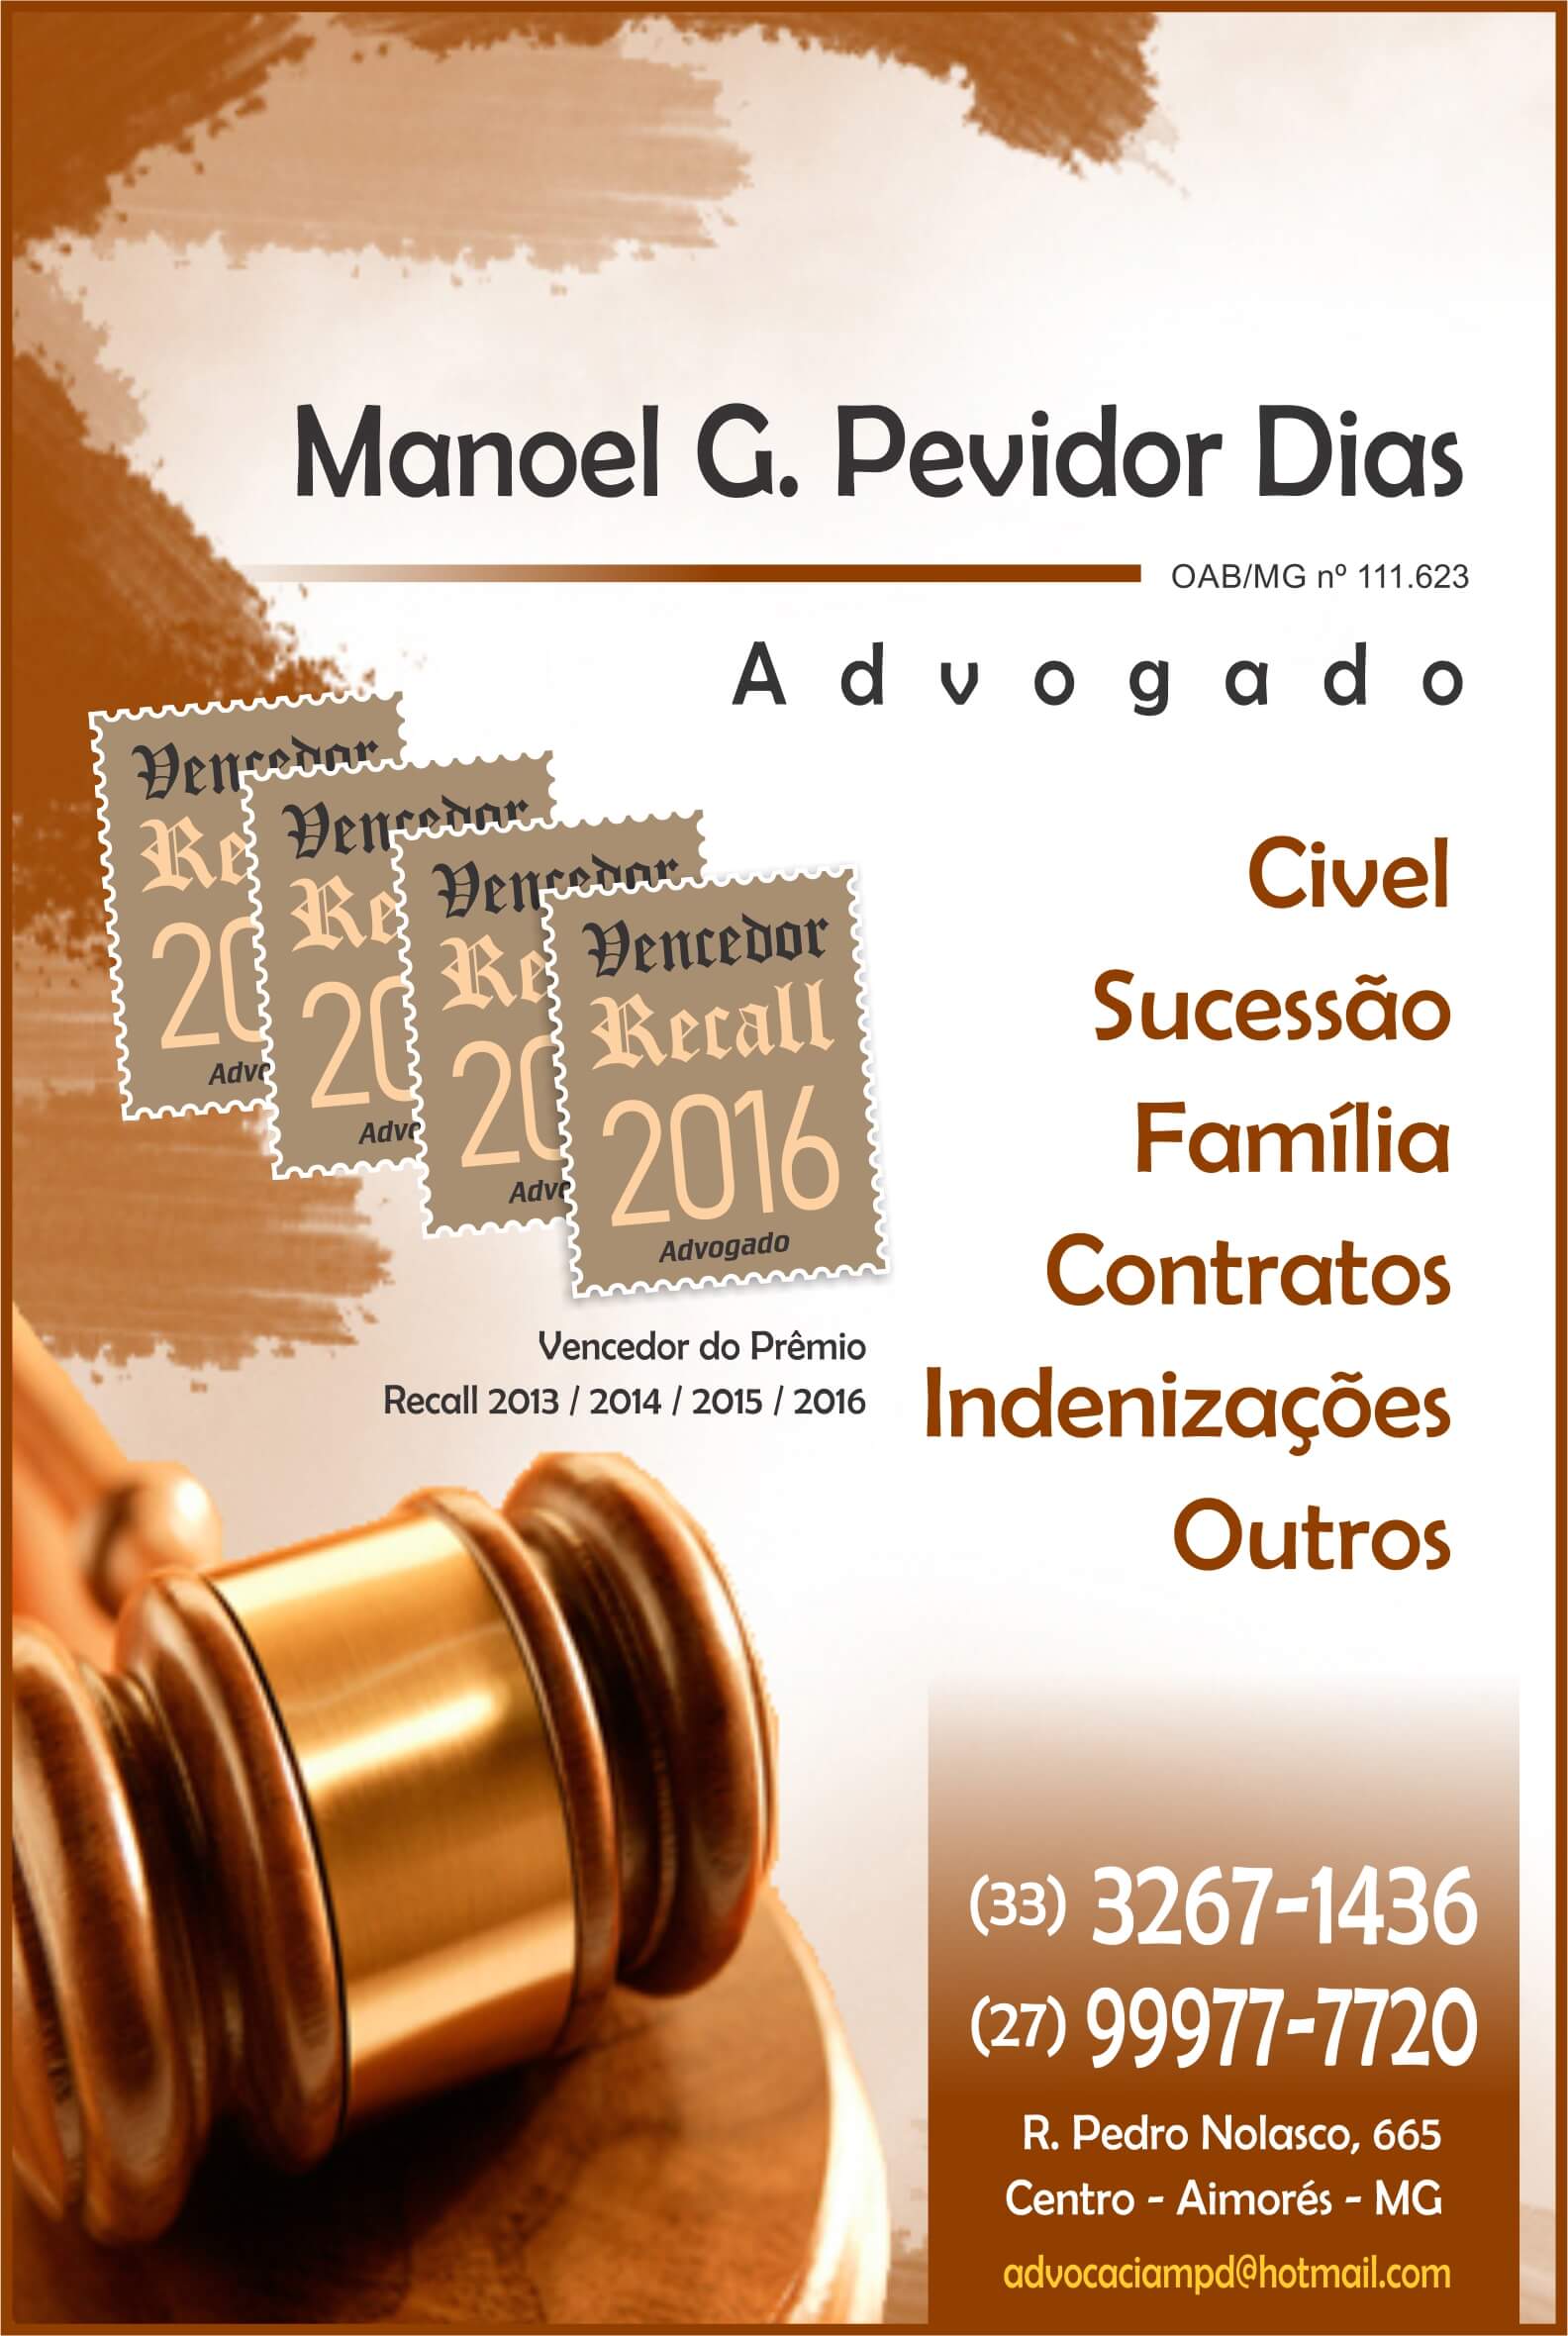 Manoel G. Pevidor Dias (advogado)